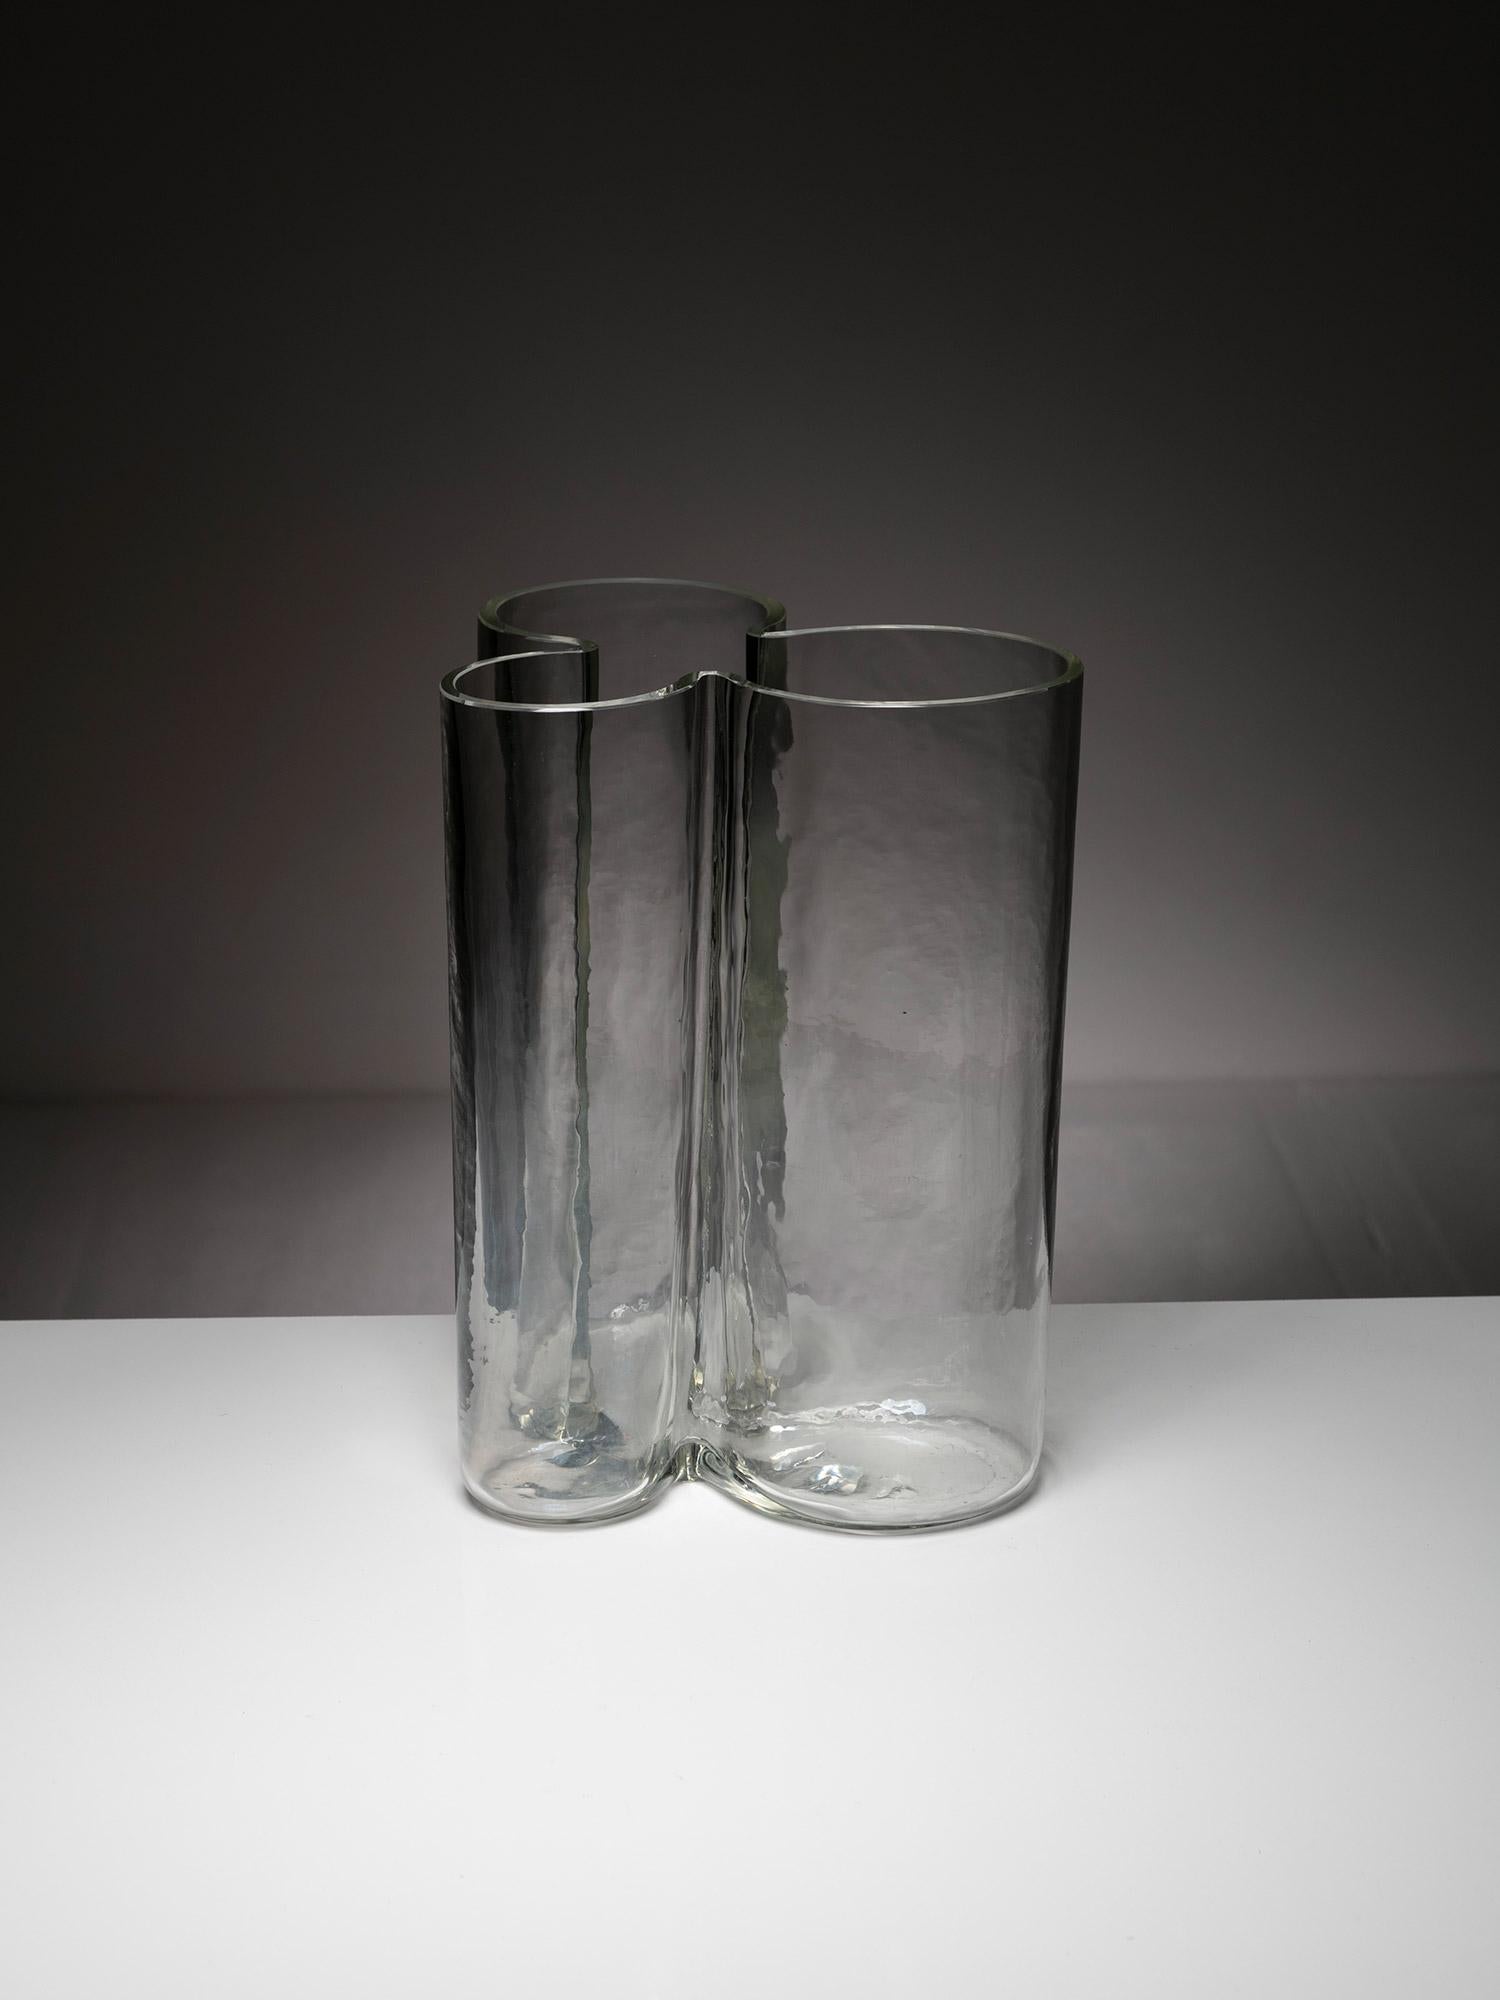 Grand vase en verre de Murano par Alfredo Barbini pour Barbini.
Corps en verre épais en forme de trèfle avec des imperfections naturelles en verre soufflé à la main.